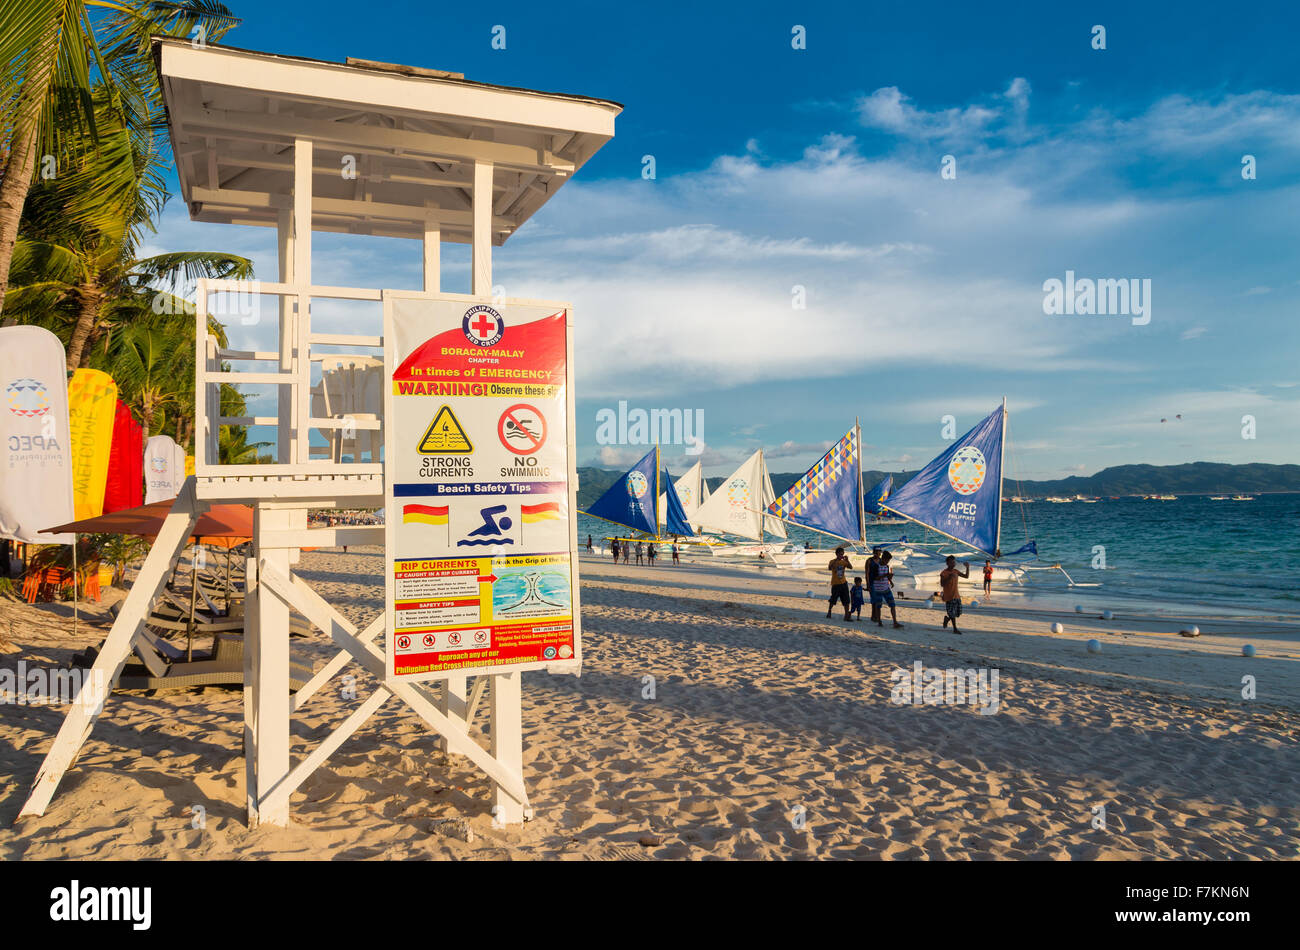 Il Boracay, Filippine - 20 Maggio 2015: vita bianca torre di guardia con istruzioni di sicurezza sulla splendida spiaggia bianca di Boracay, t Foto Stock